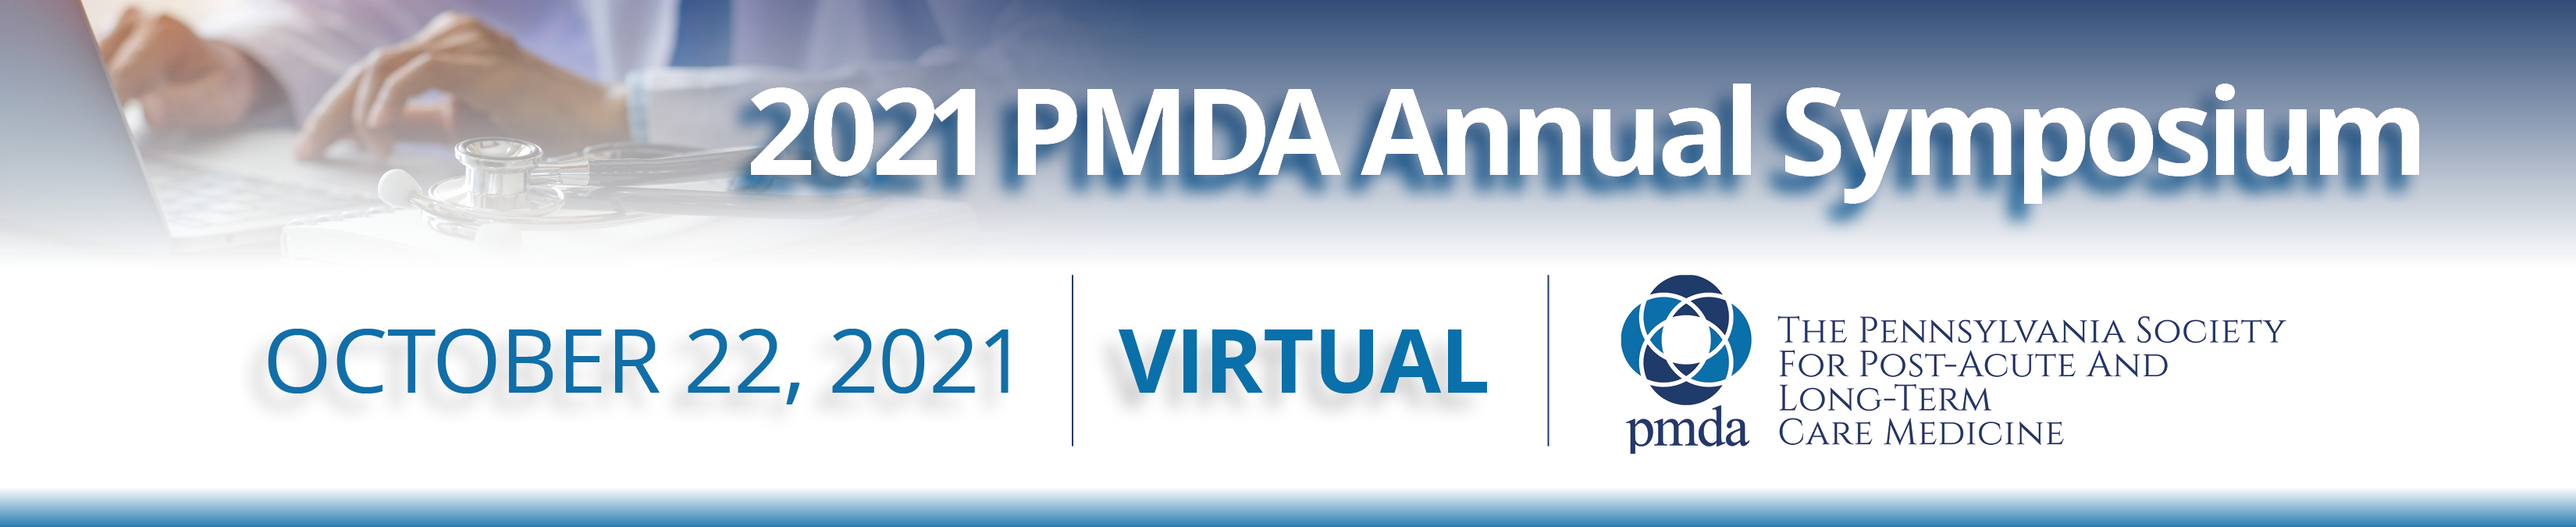 2021 PMDA Annual Symposium